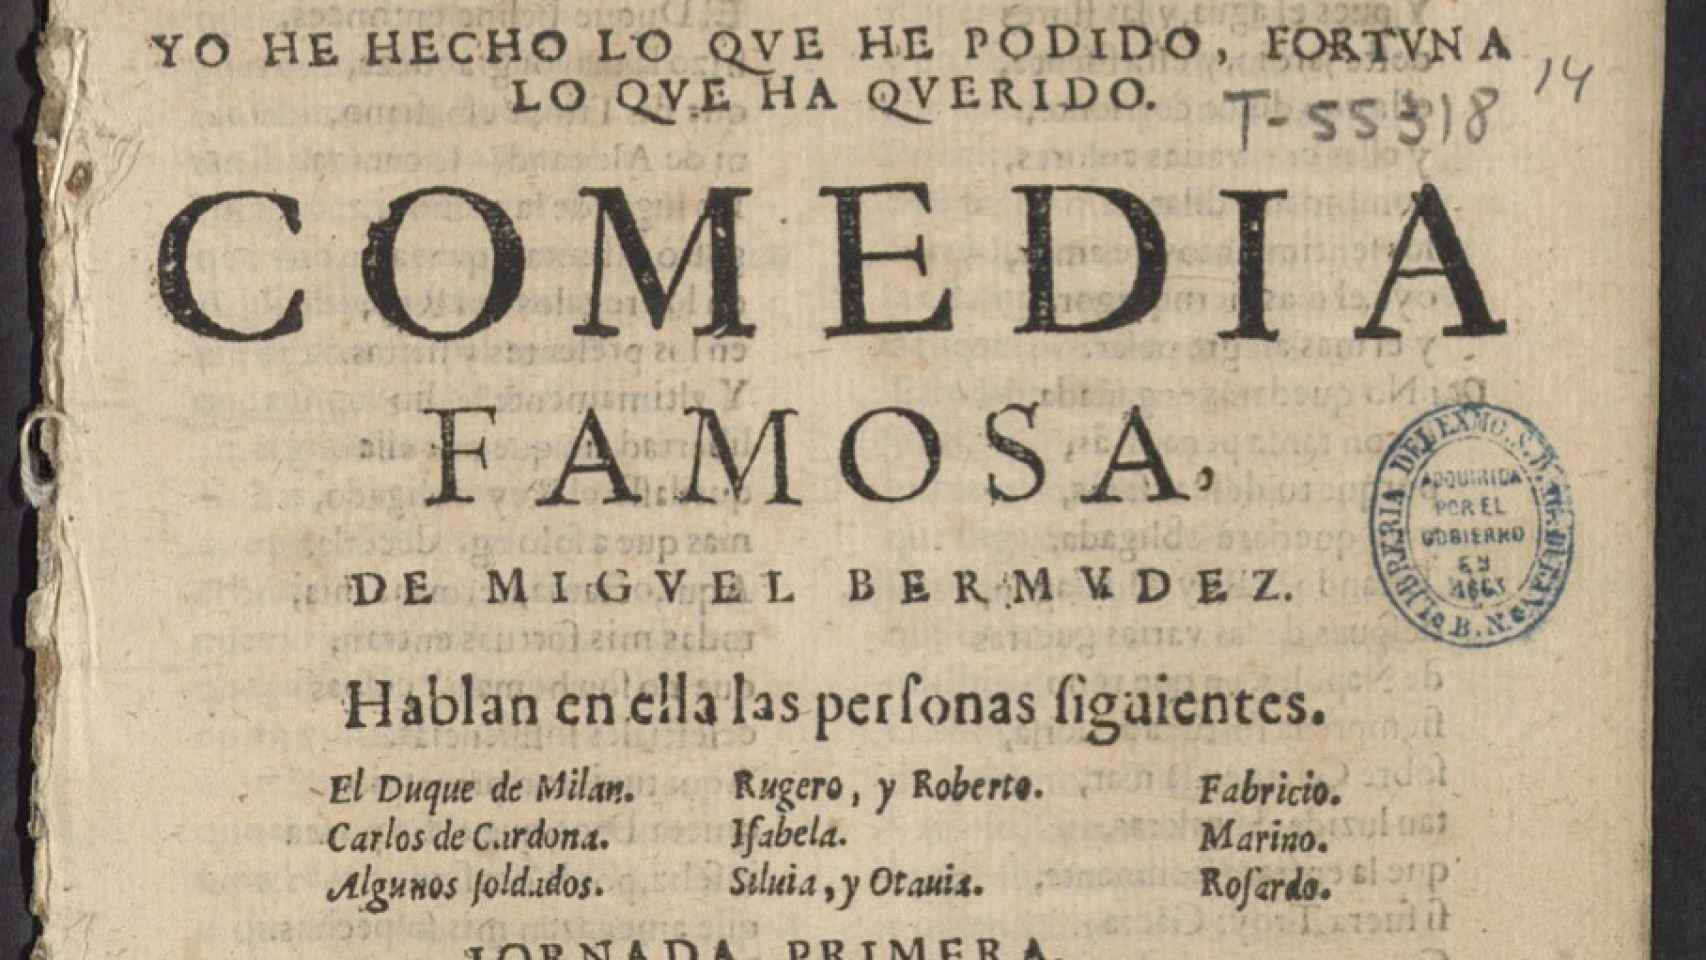 La comedia desconocida de Lope de Vega encontrada en la Biblioteca Nacional Española